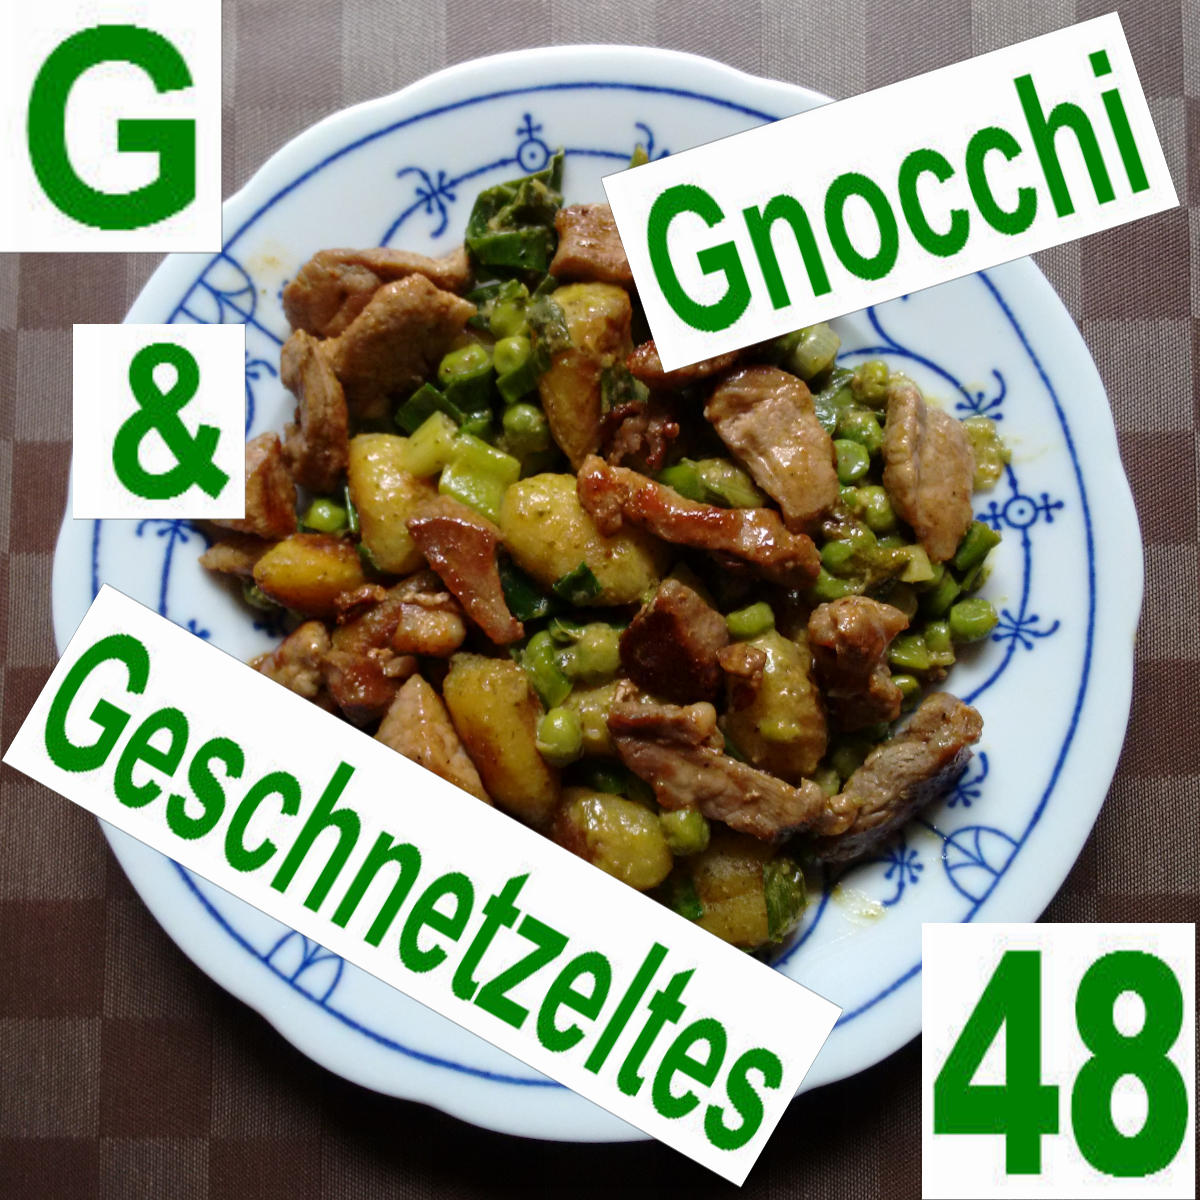 Gnocchi & Geschnetzeltes | vonMich